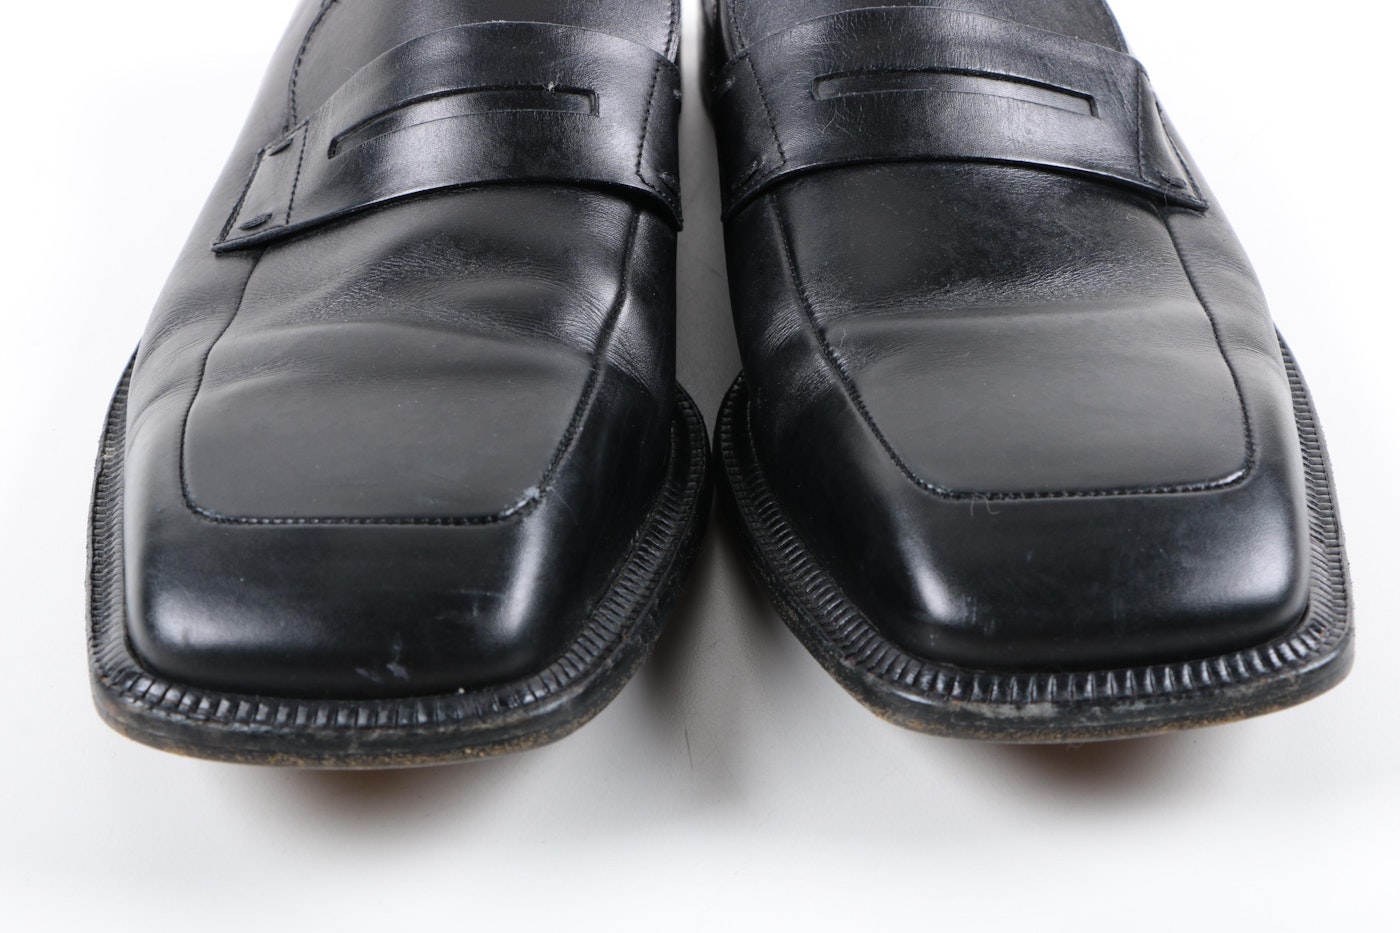 louis-vuitton mens dress shoes Black Size 11